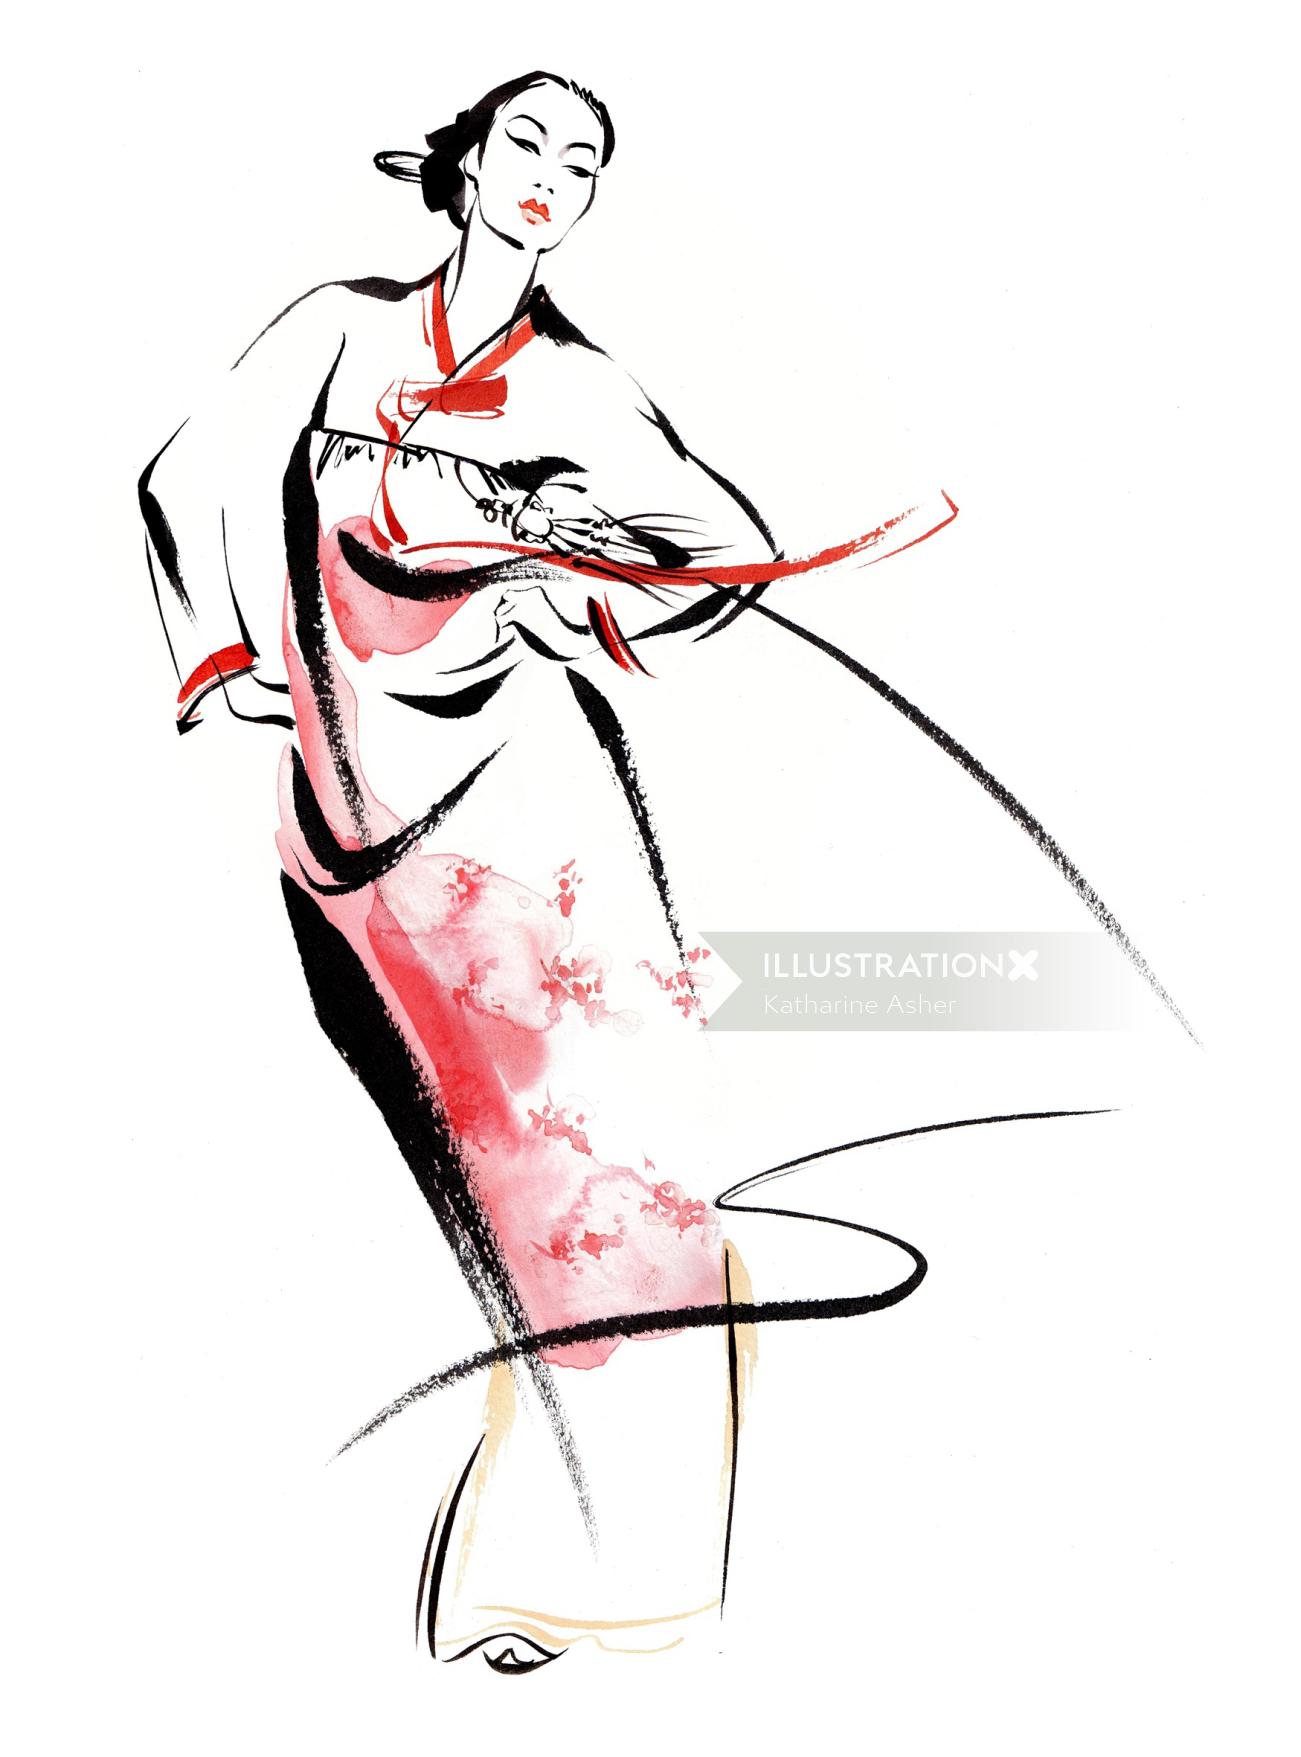 Illustration de la robe traditionnelle coréenne par Katharine Asher